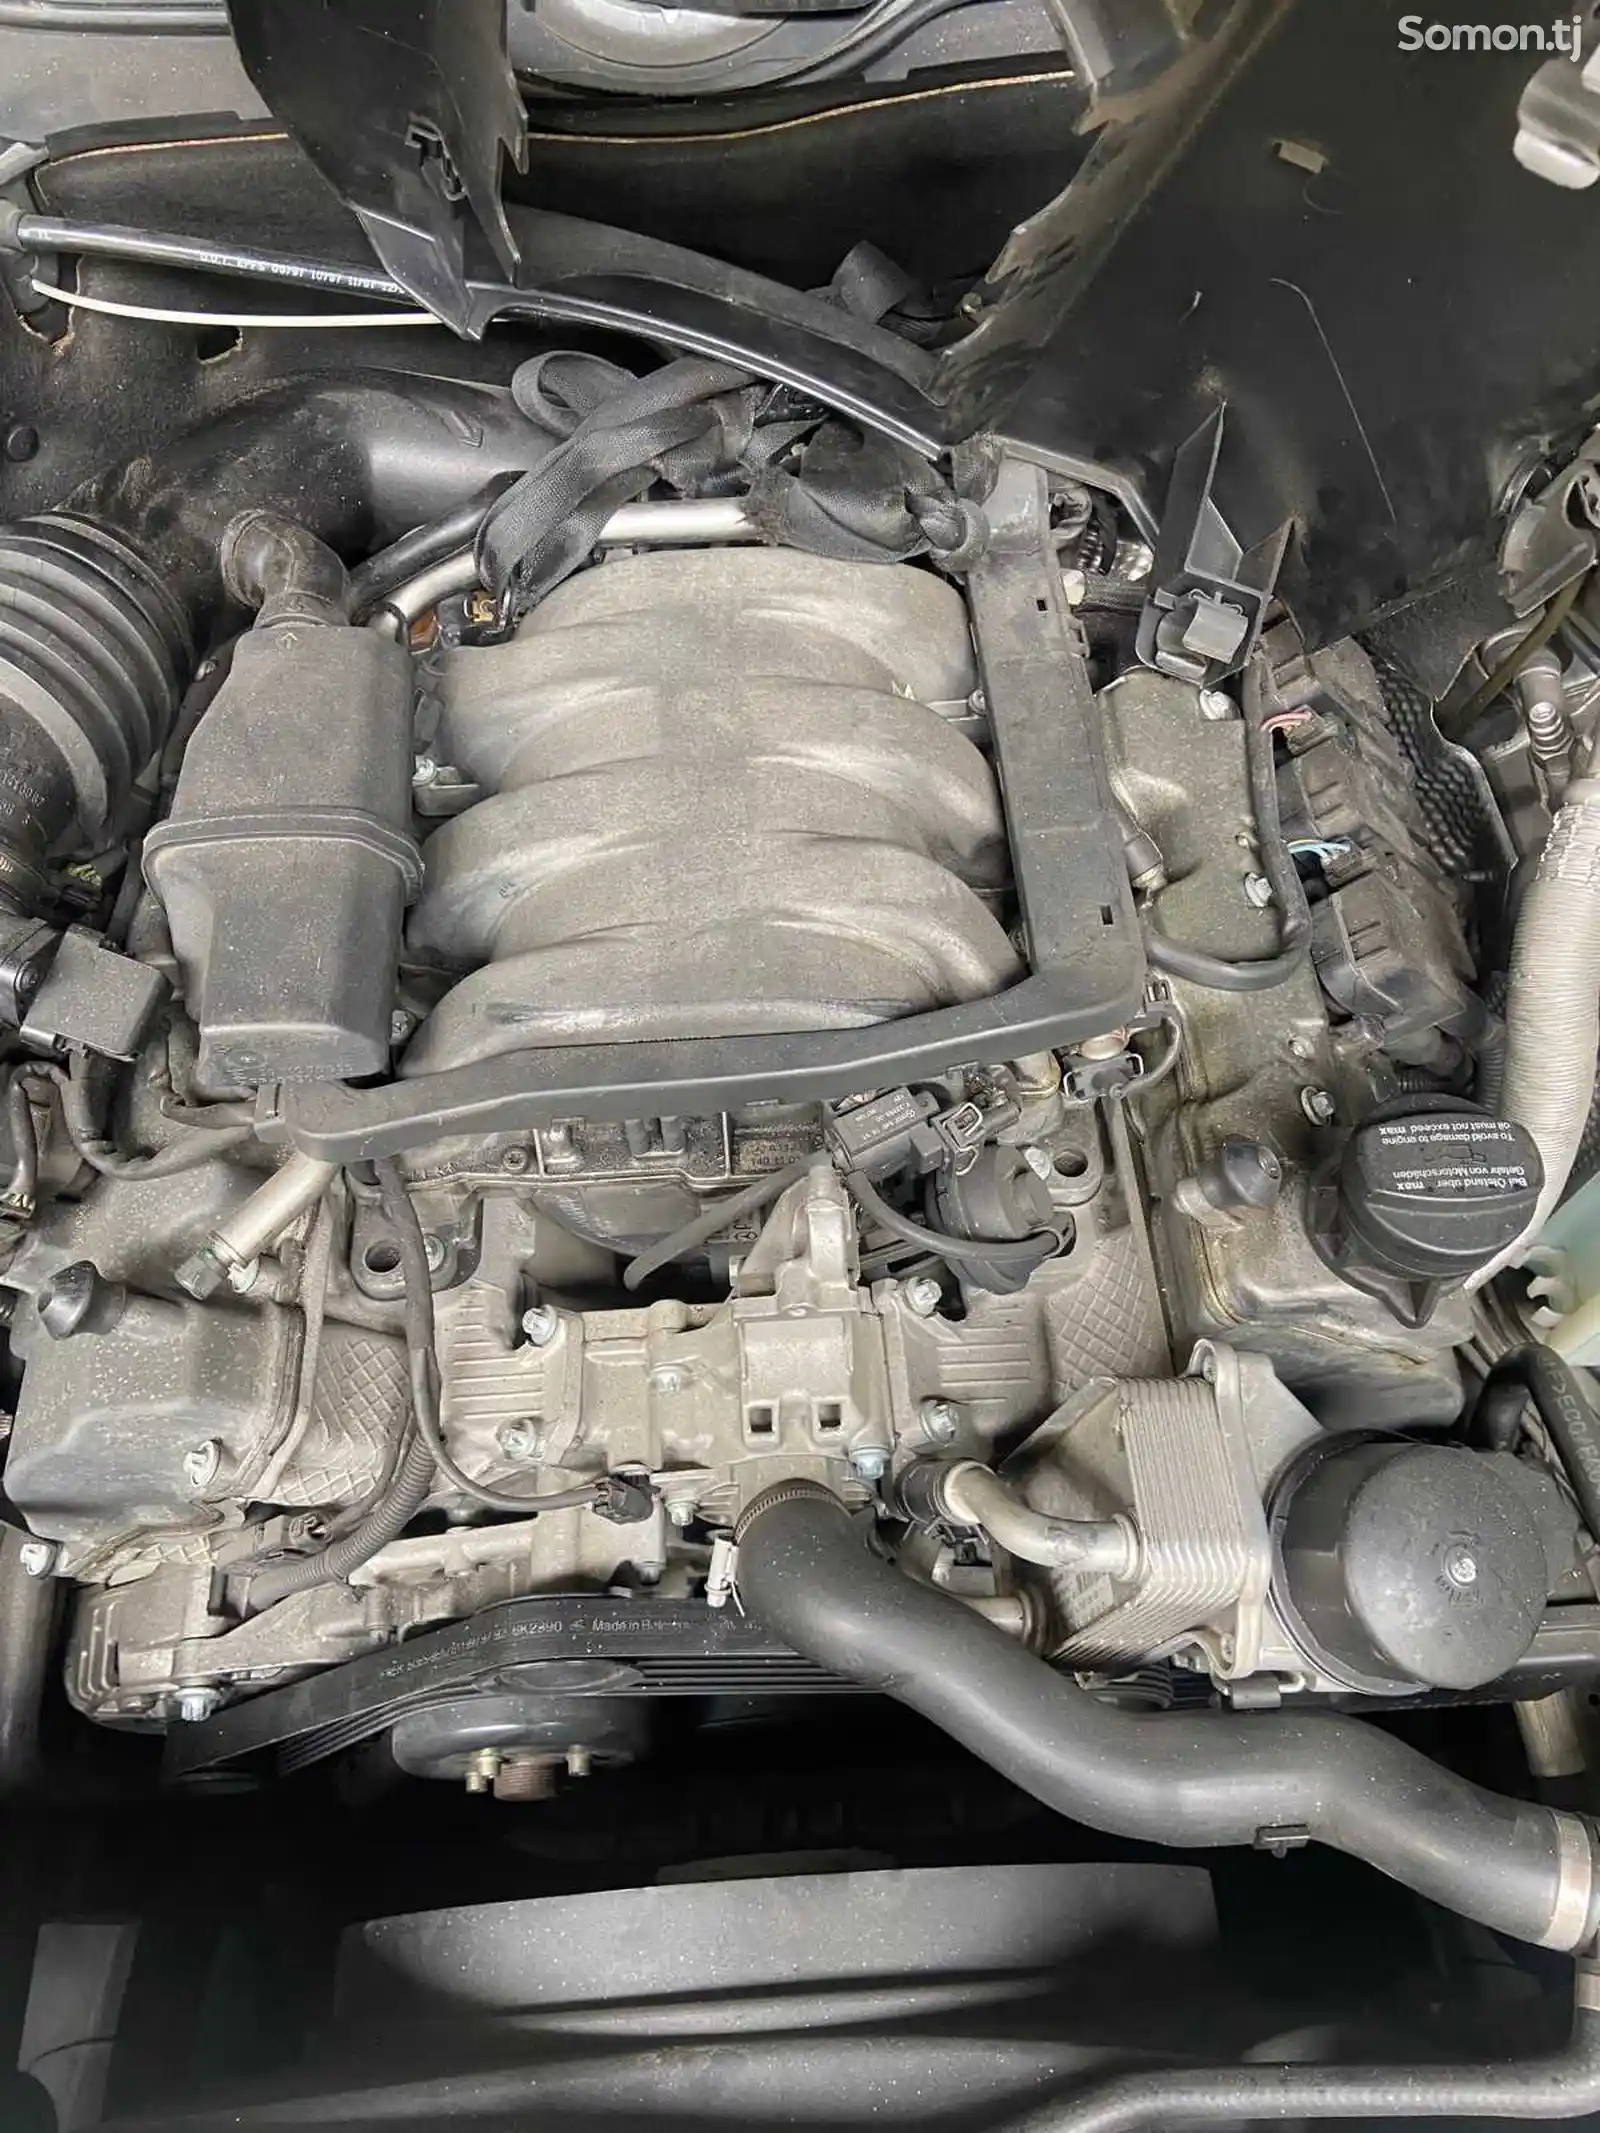 Мотор на Mercedes-Benz w202 сечка 2,4л-2